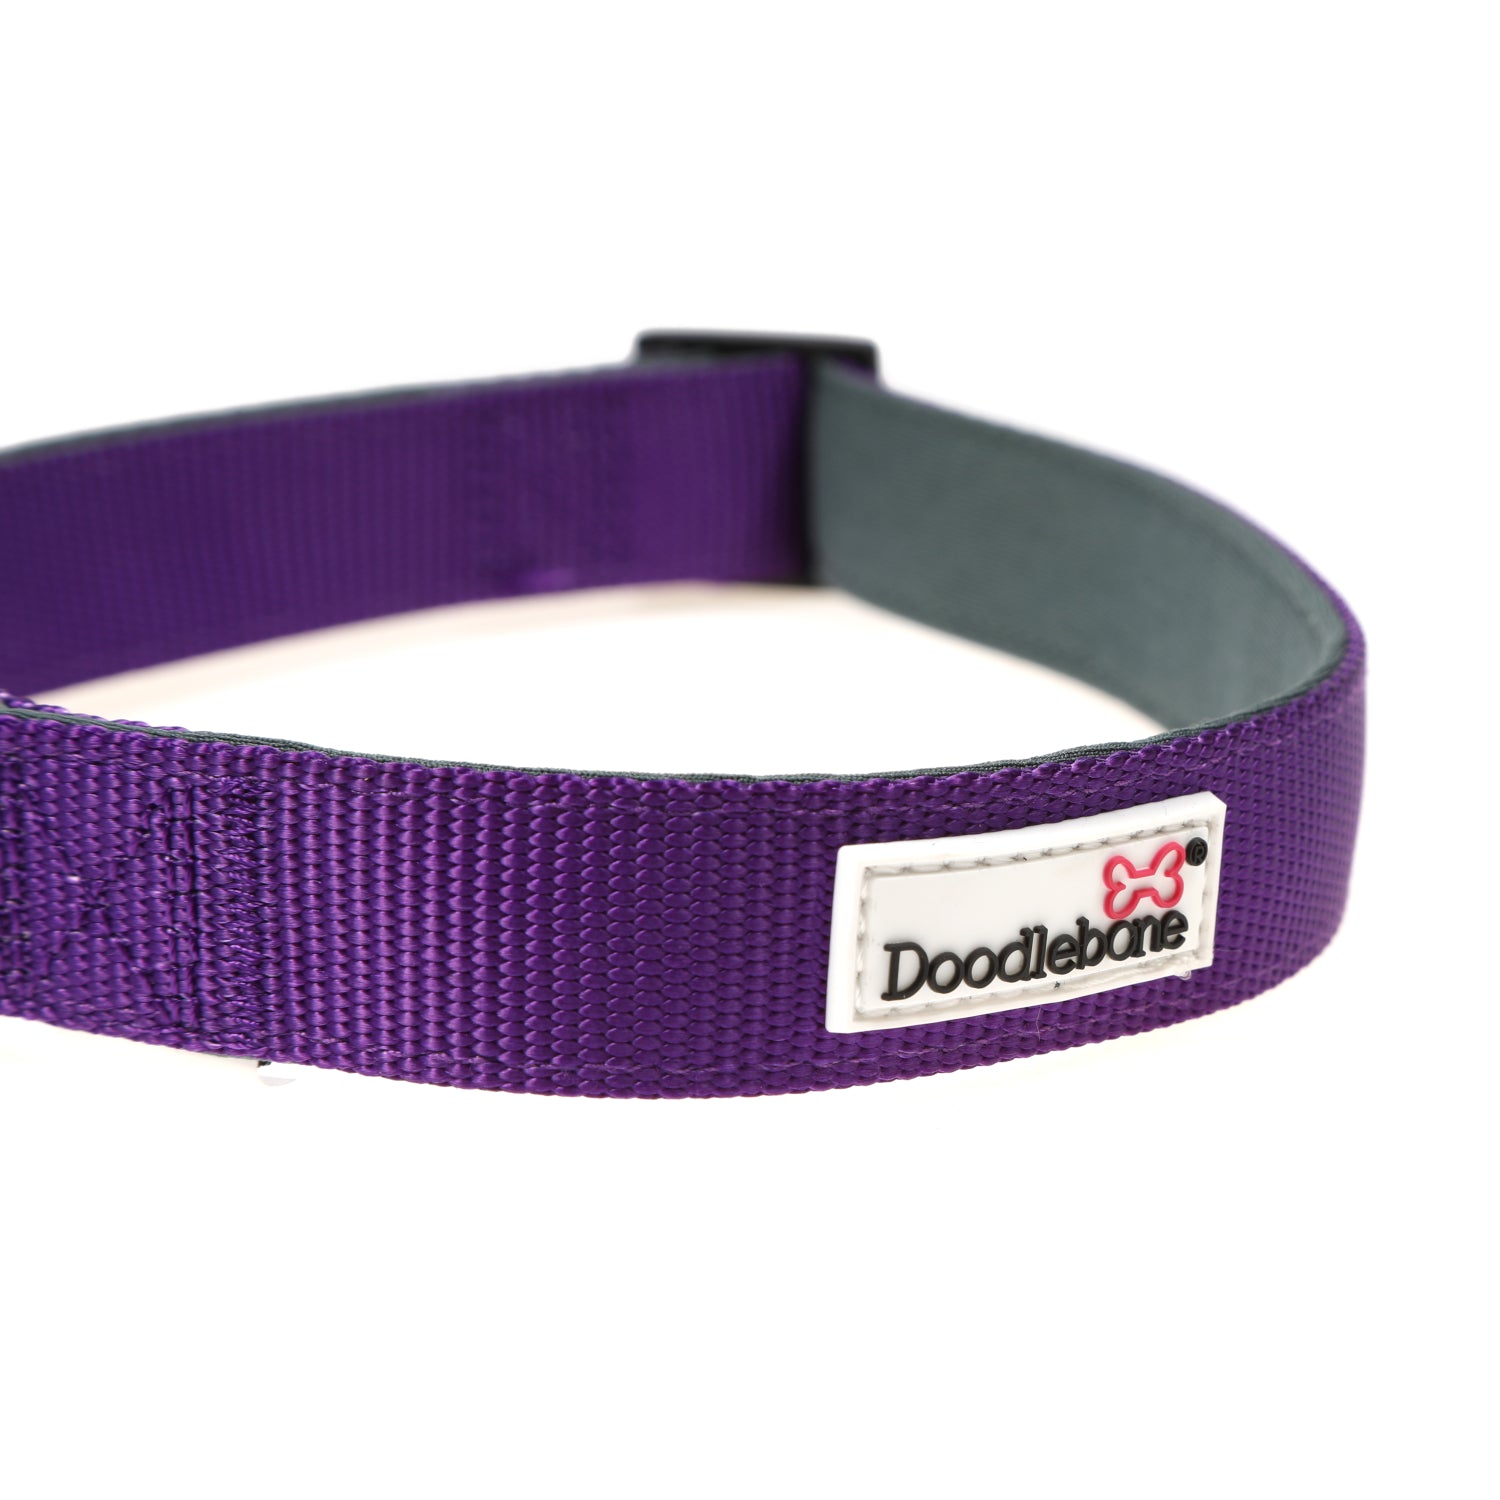 Doodlebone Originals Padded Dog Collar Violet 3 Sizes